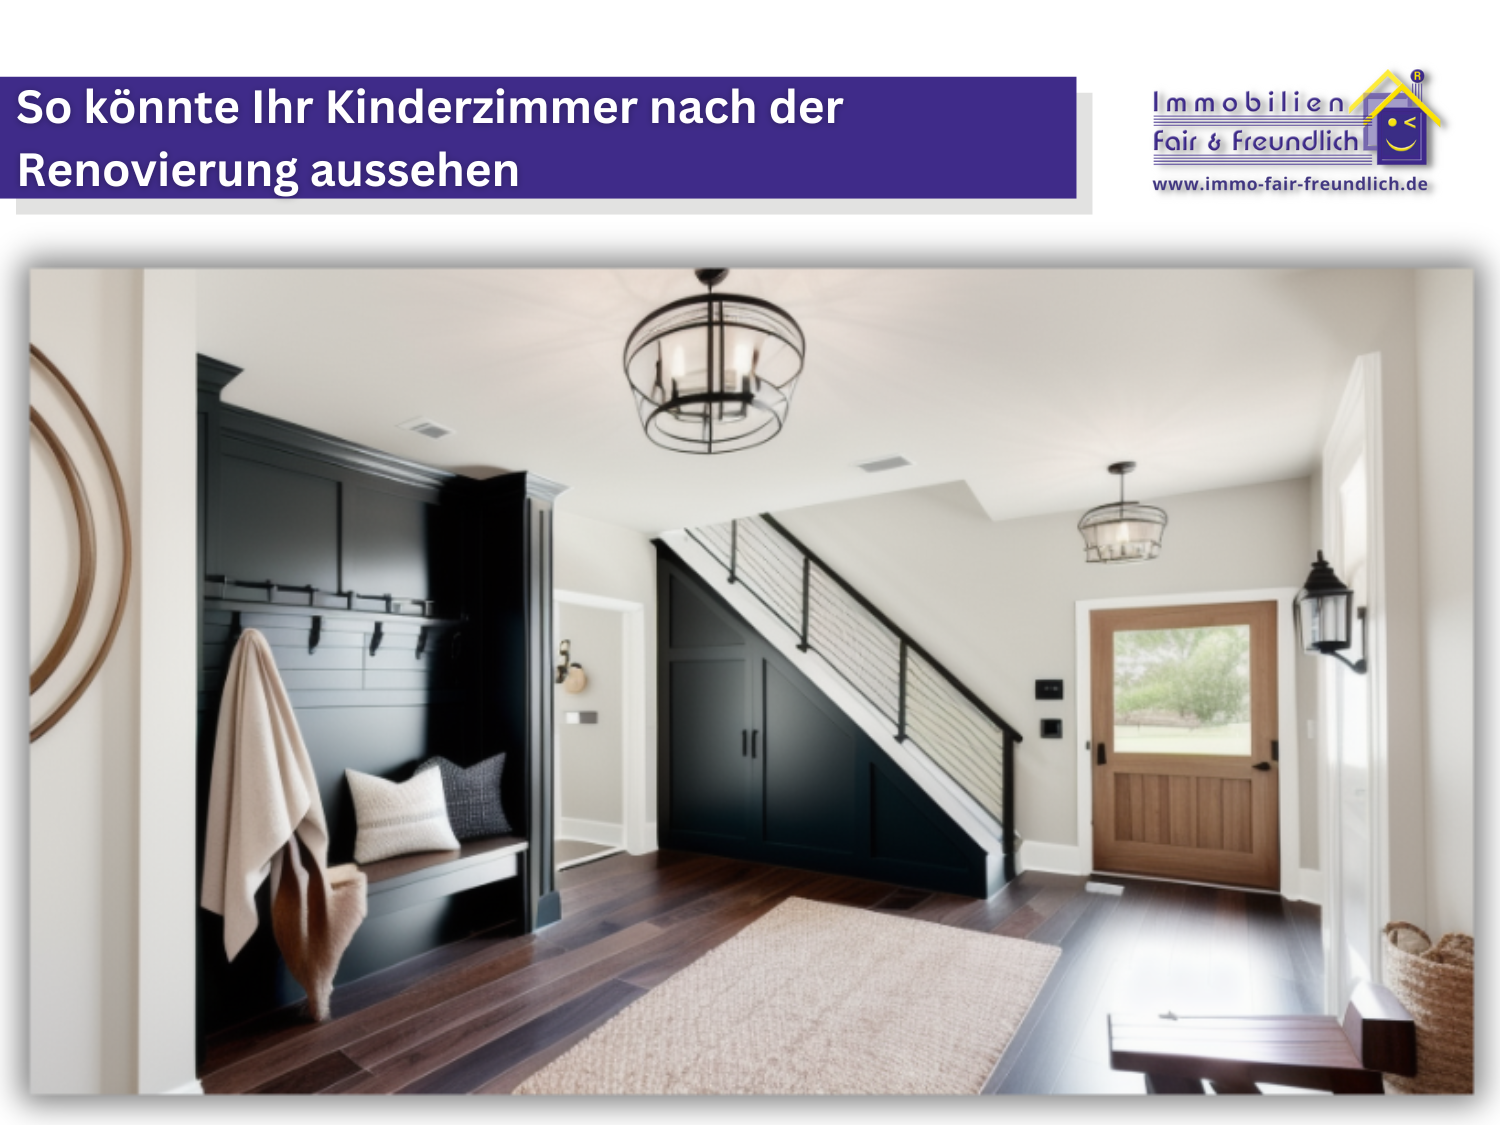 Immobilie in Rhauderfehn digitales Home Staging